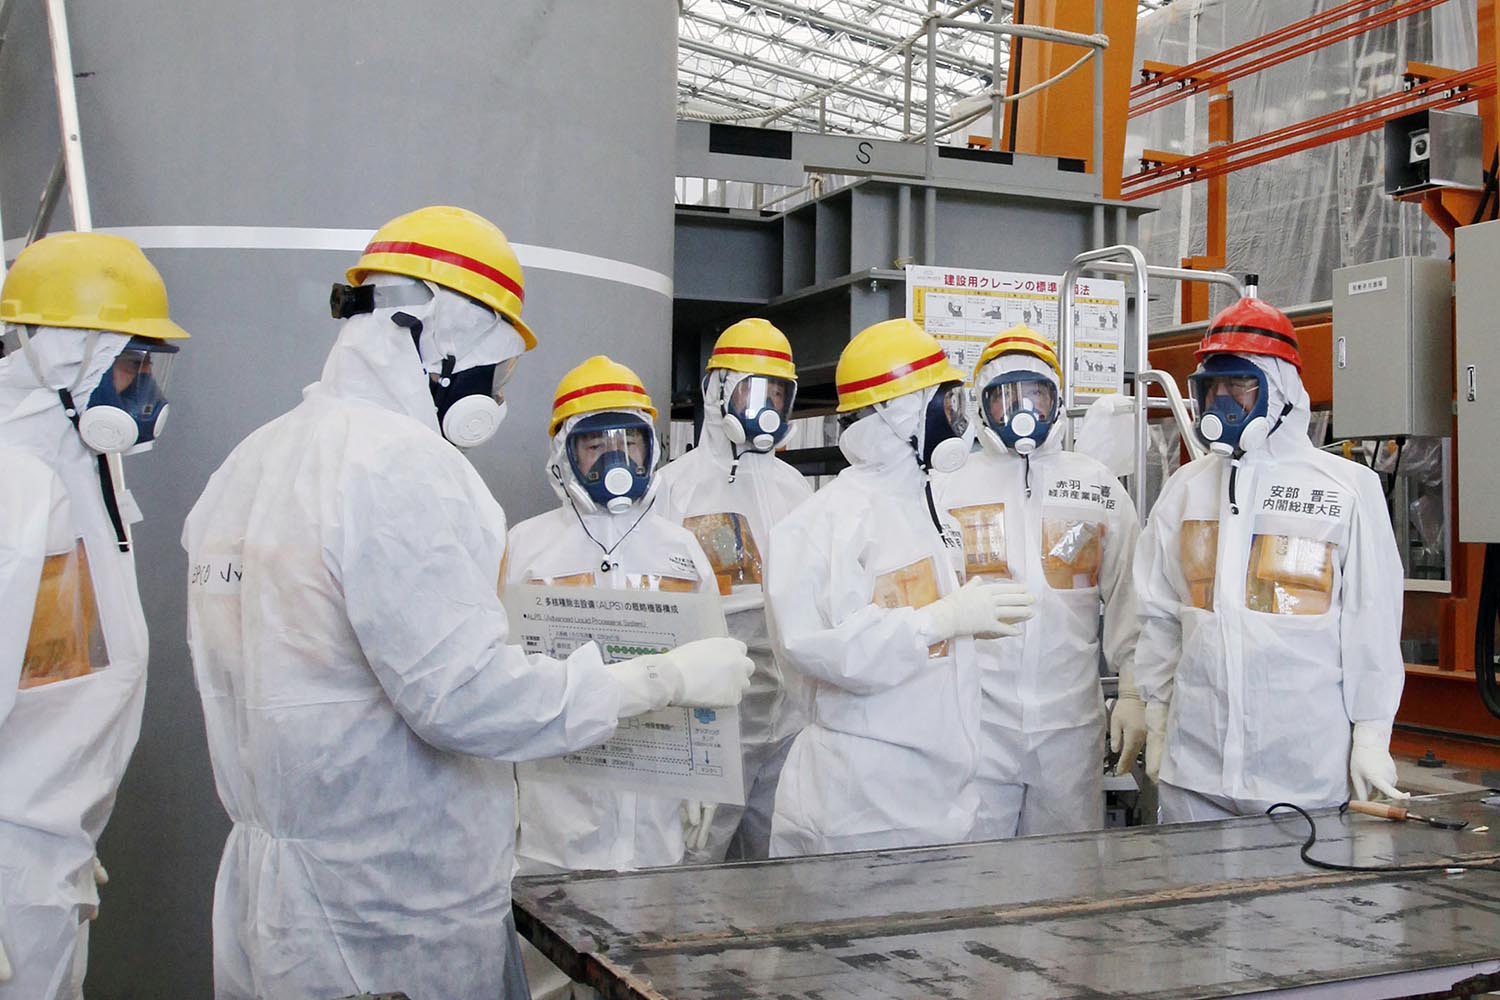 Los trabajadores de Fukushima pueden haber sufrido un 20% más de radiación atómica, según la ONU